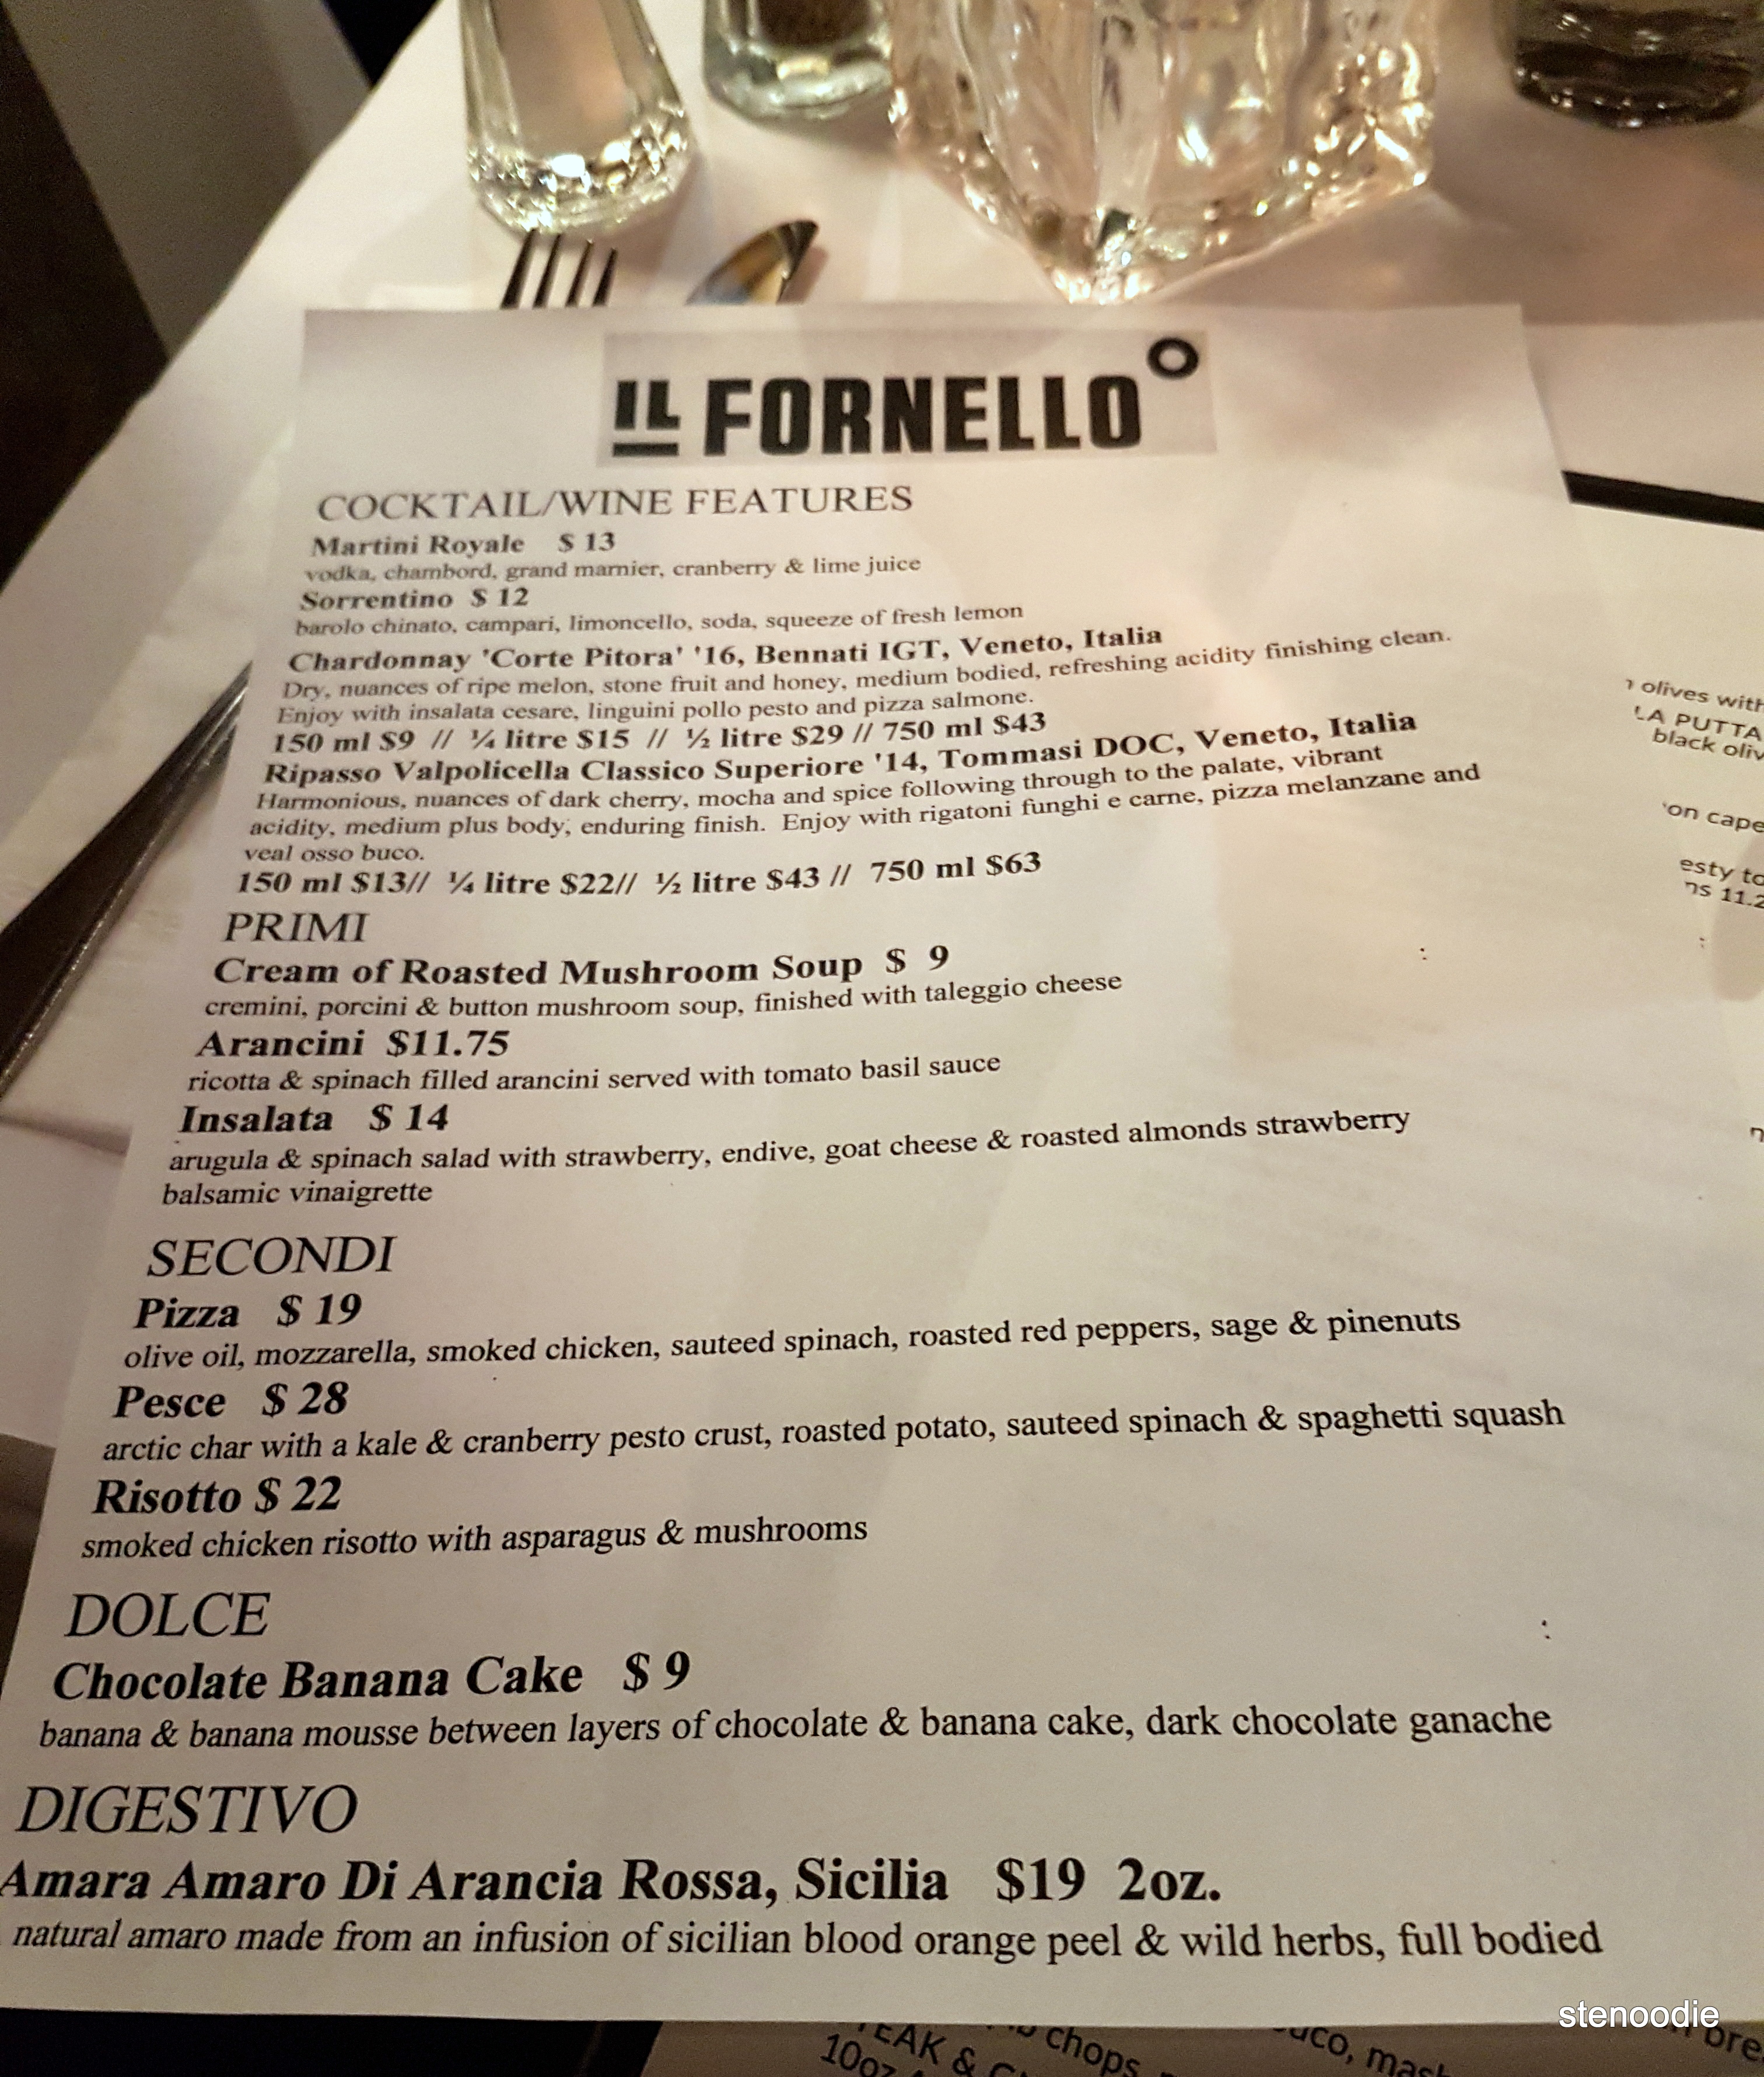 Il Fornello dinner menu and prices